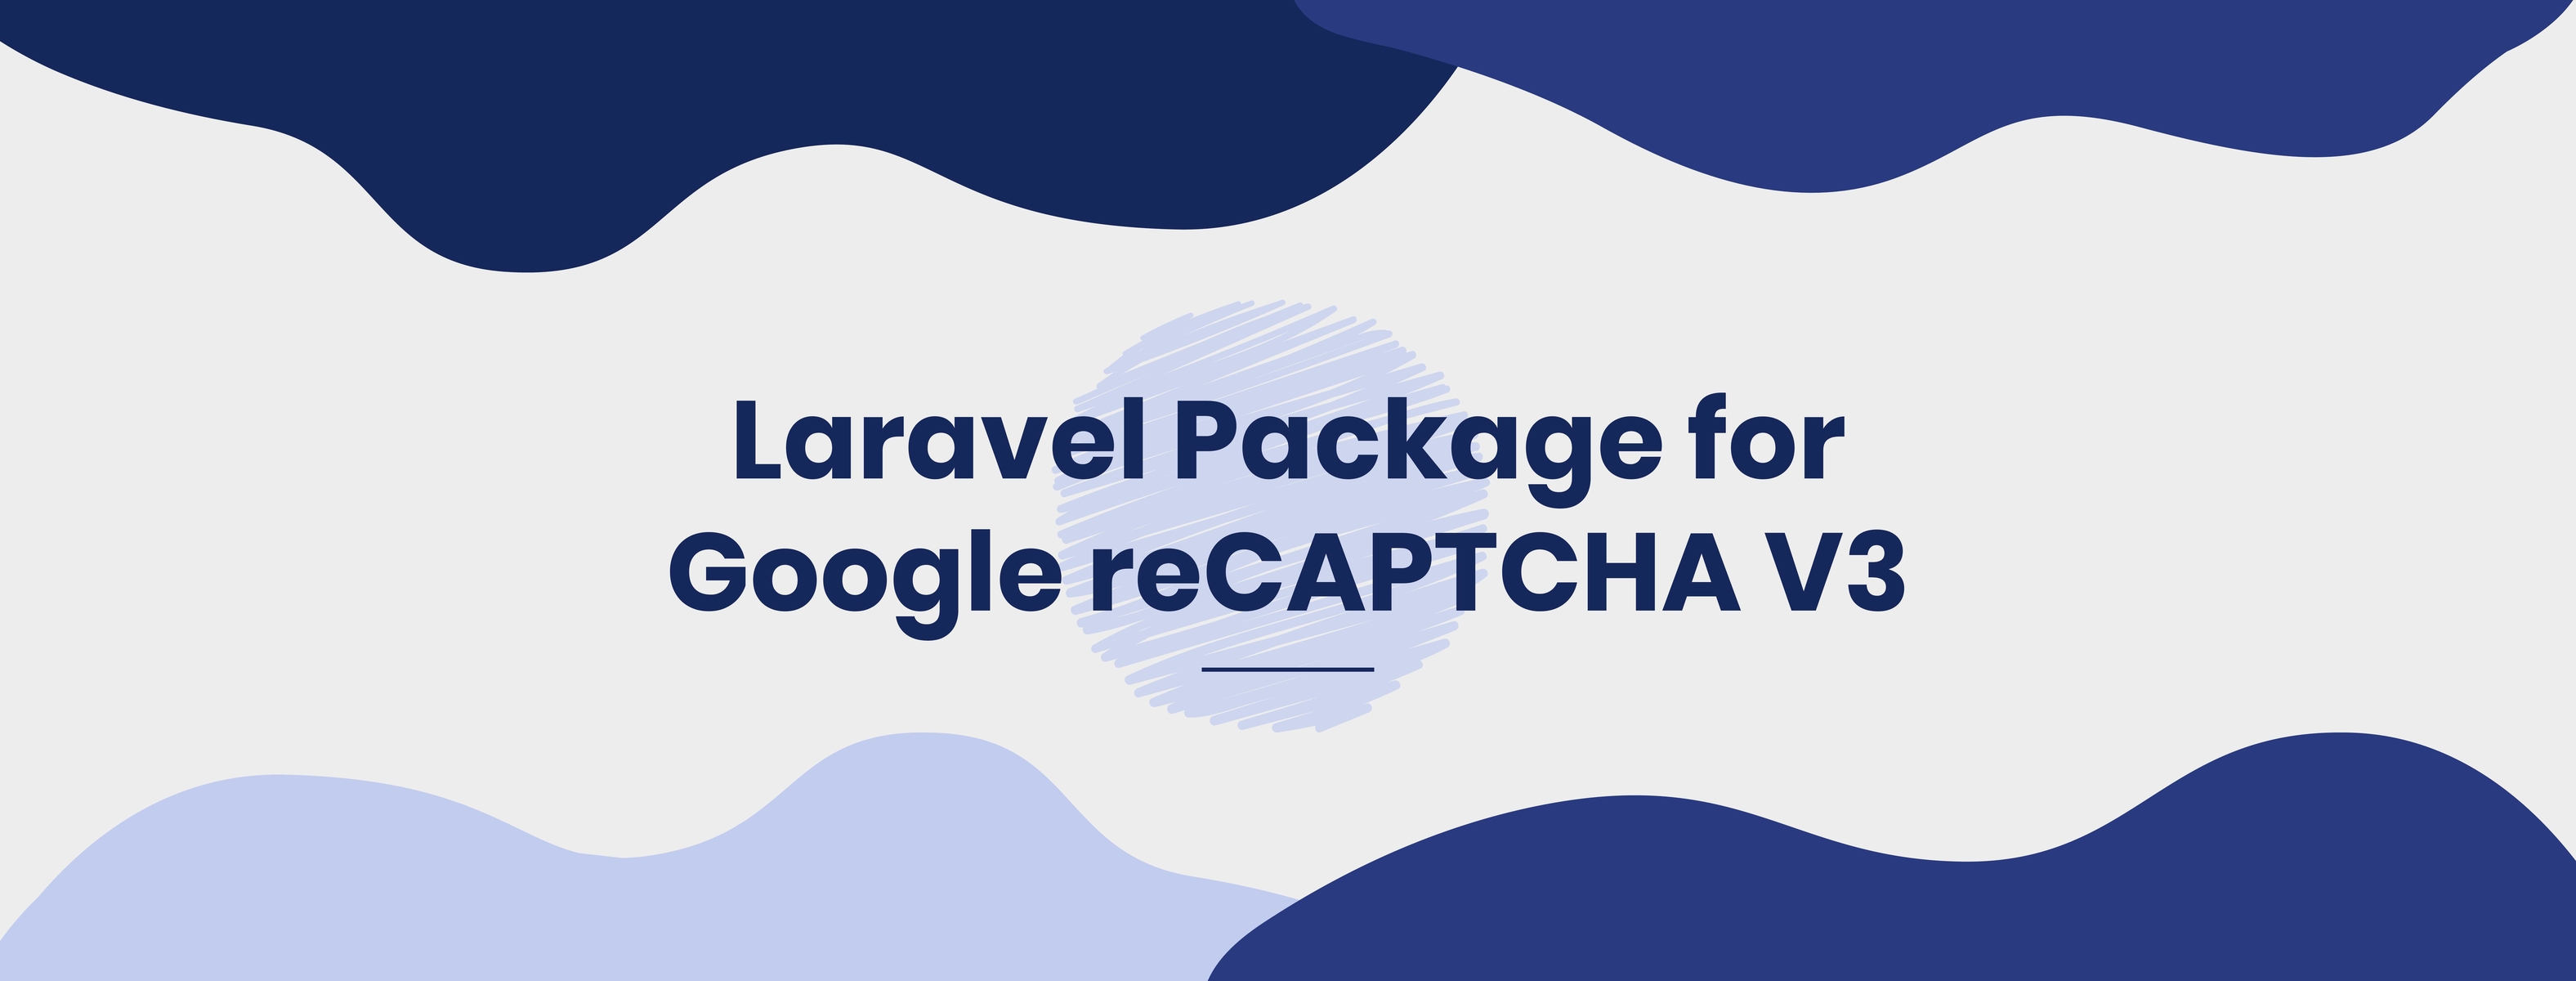 A New Laravel Package for Google reCAPTCHA V3